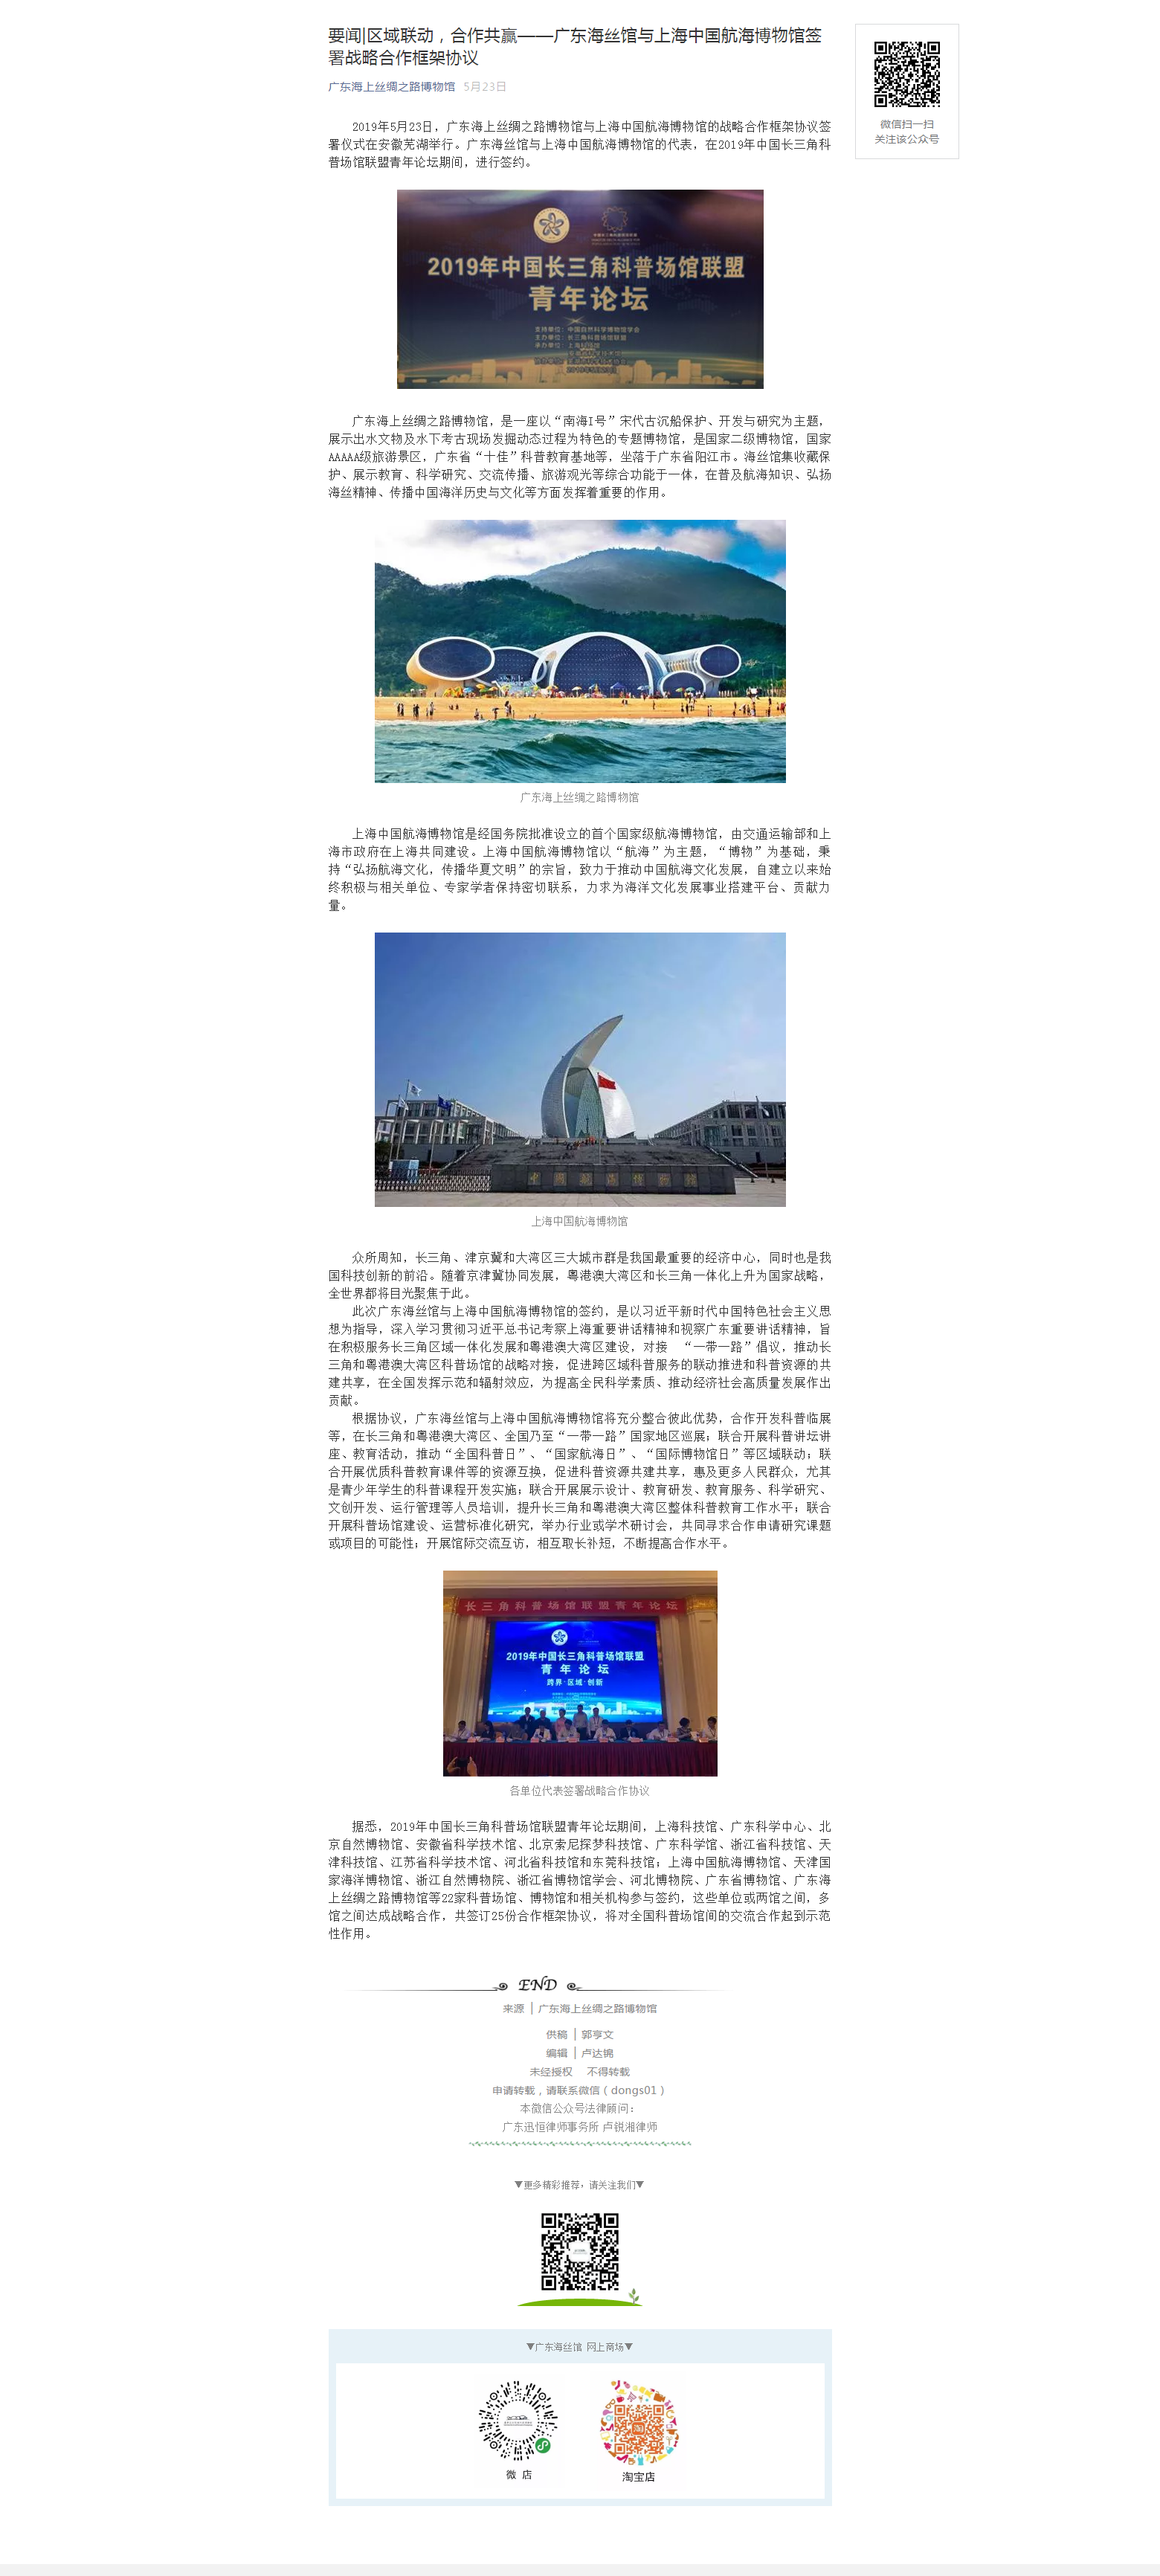 区域联动，合作共赢——广东海丝馆与上海中国航海博物馆签署战略合作框架协议.png